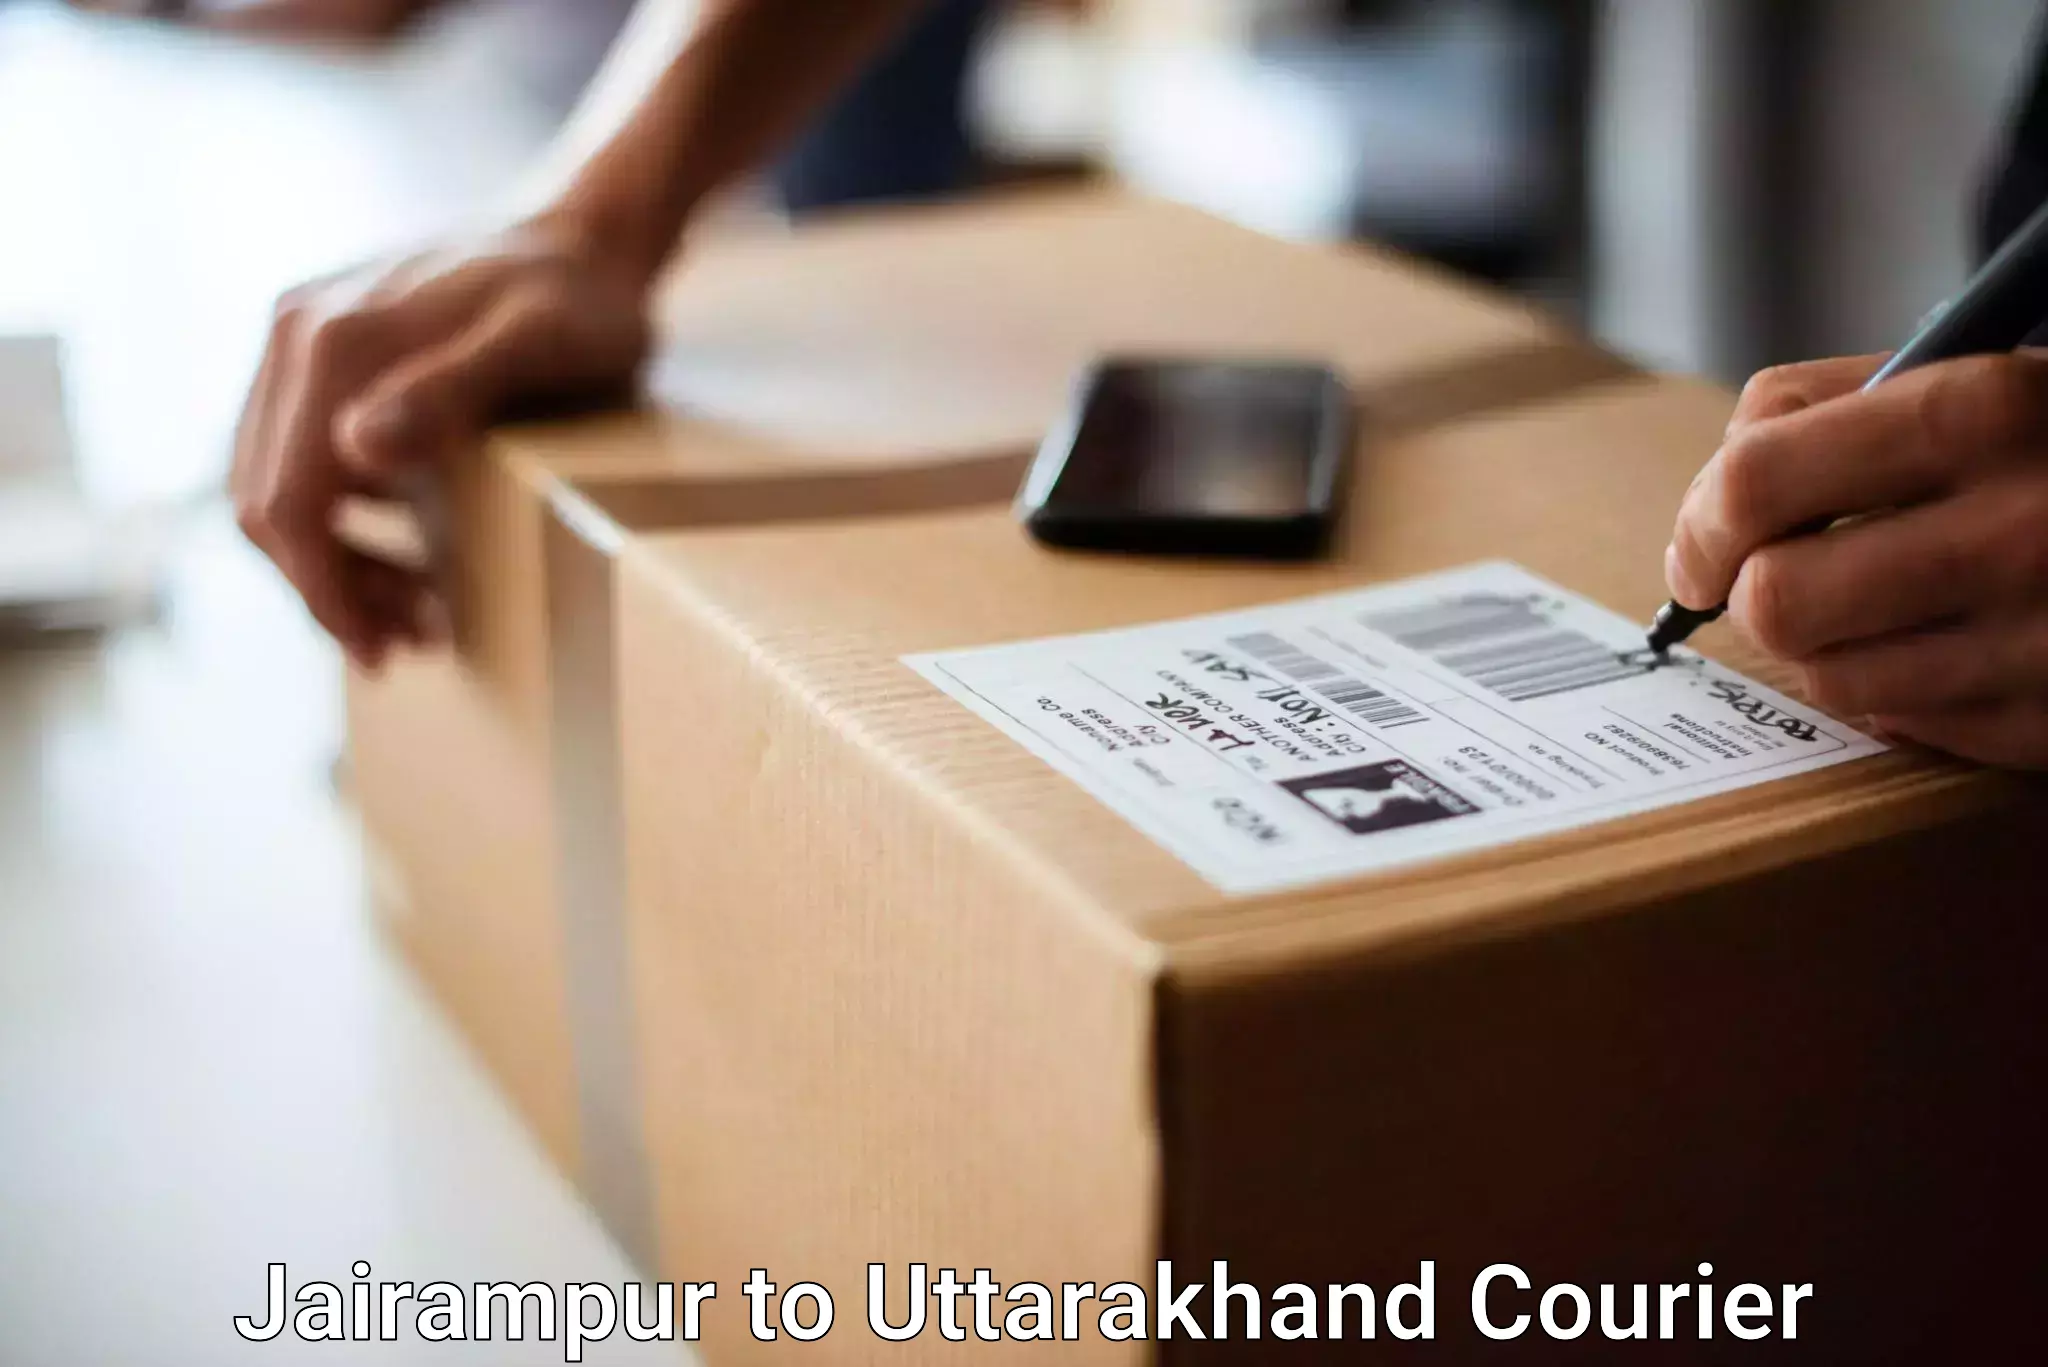 Urgent luggage shipment Jairampur to Lohaghat